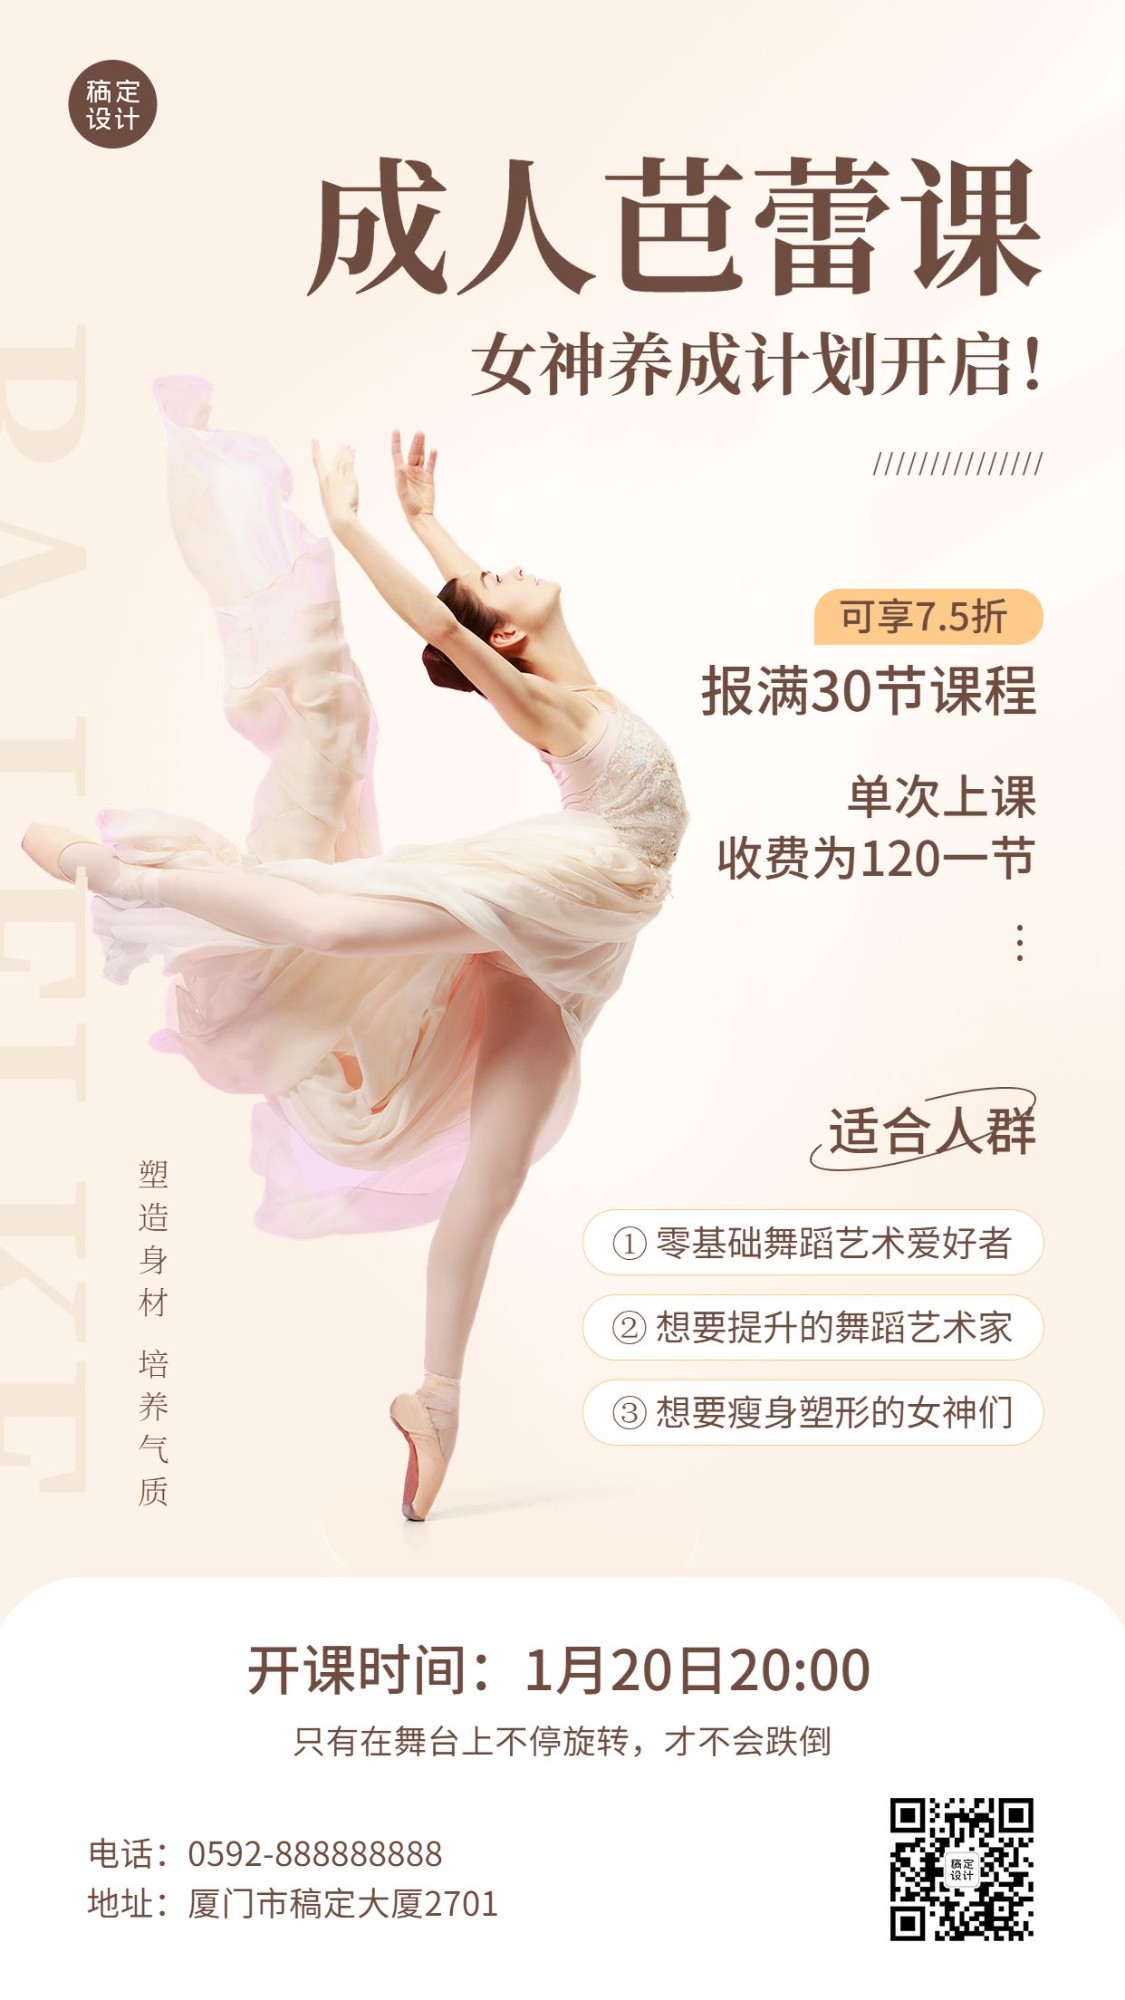 教育培训成人芭蕾课程招生宣传手机海报预览效果